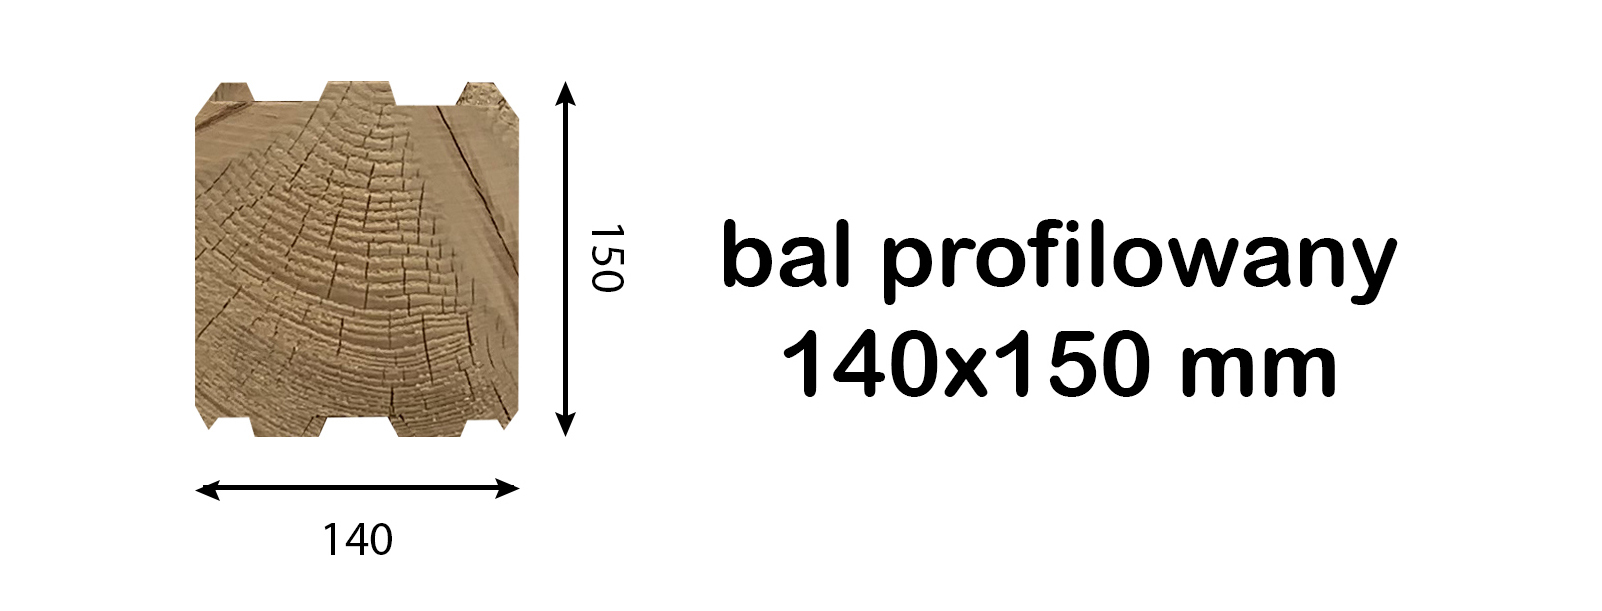 bal prostokatny wymiary 140x150 pol.jpg